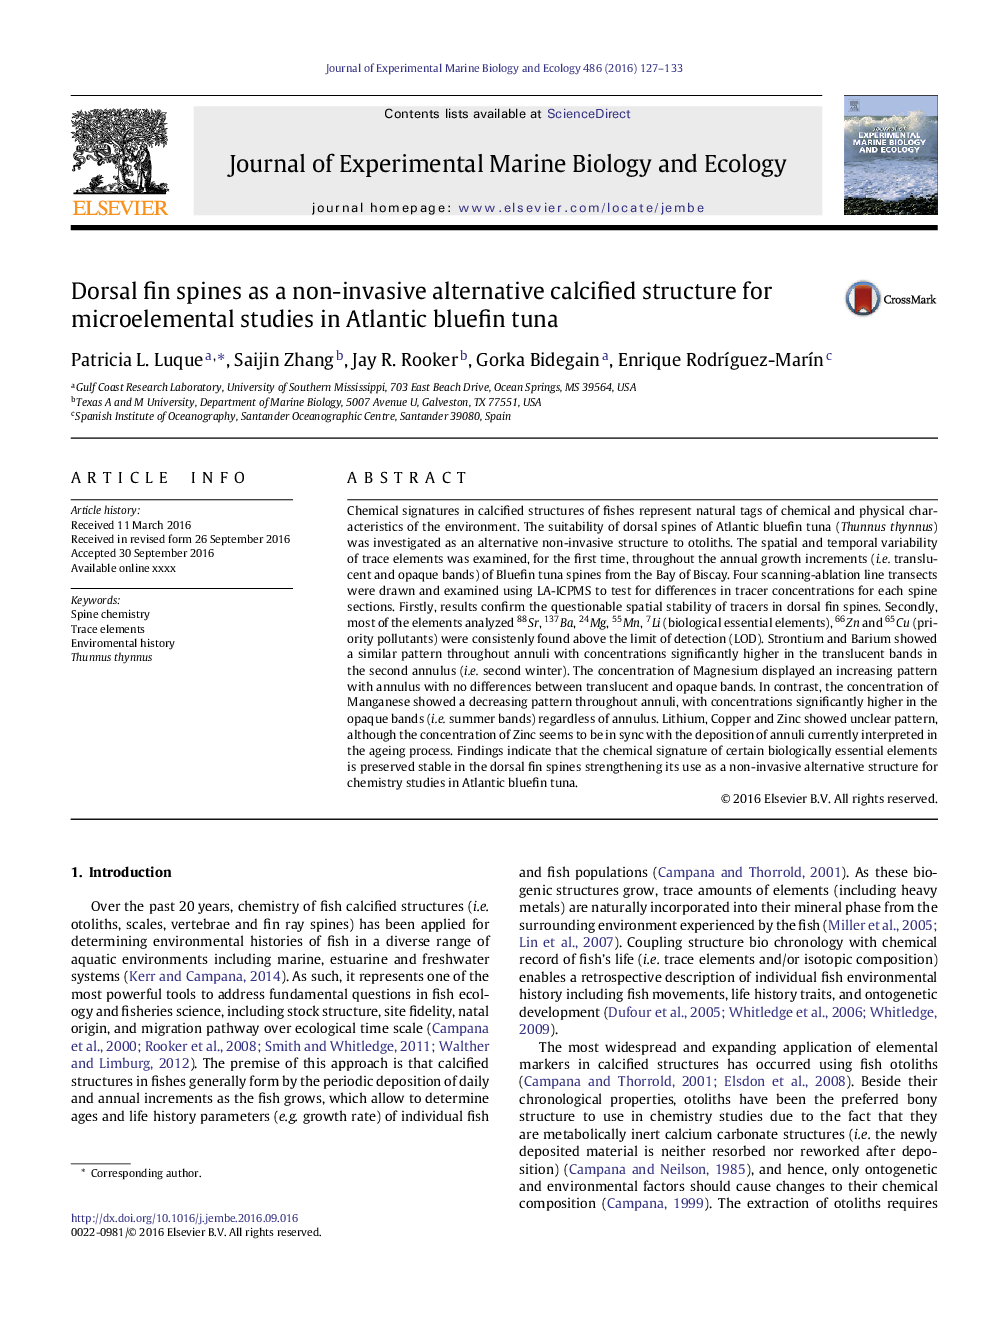 باله برآمدگی پشتی به عنوان یک ساختار کلسیفیه جایگزین غیرتهاجمی برای مطالعات میکروعنصری در تن باله آبی شمالی